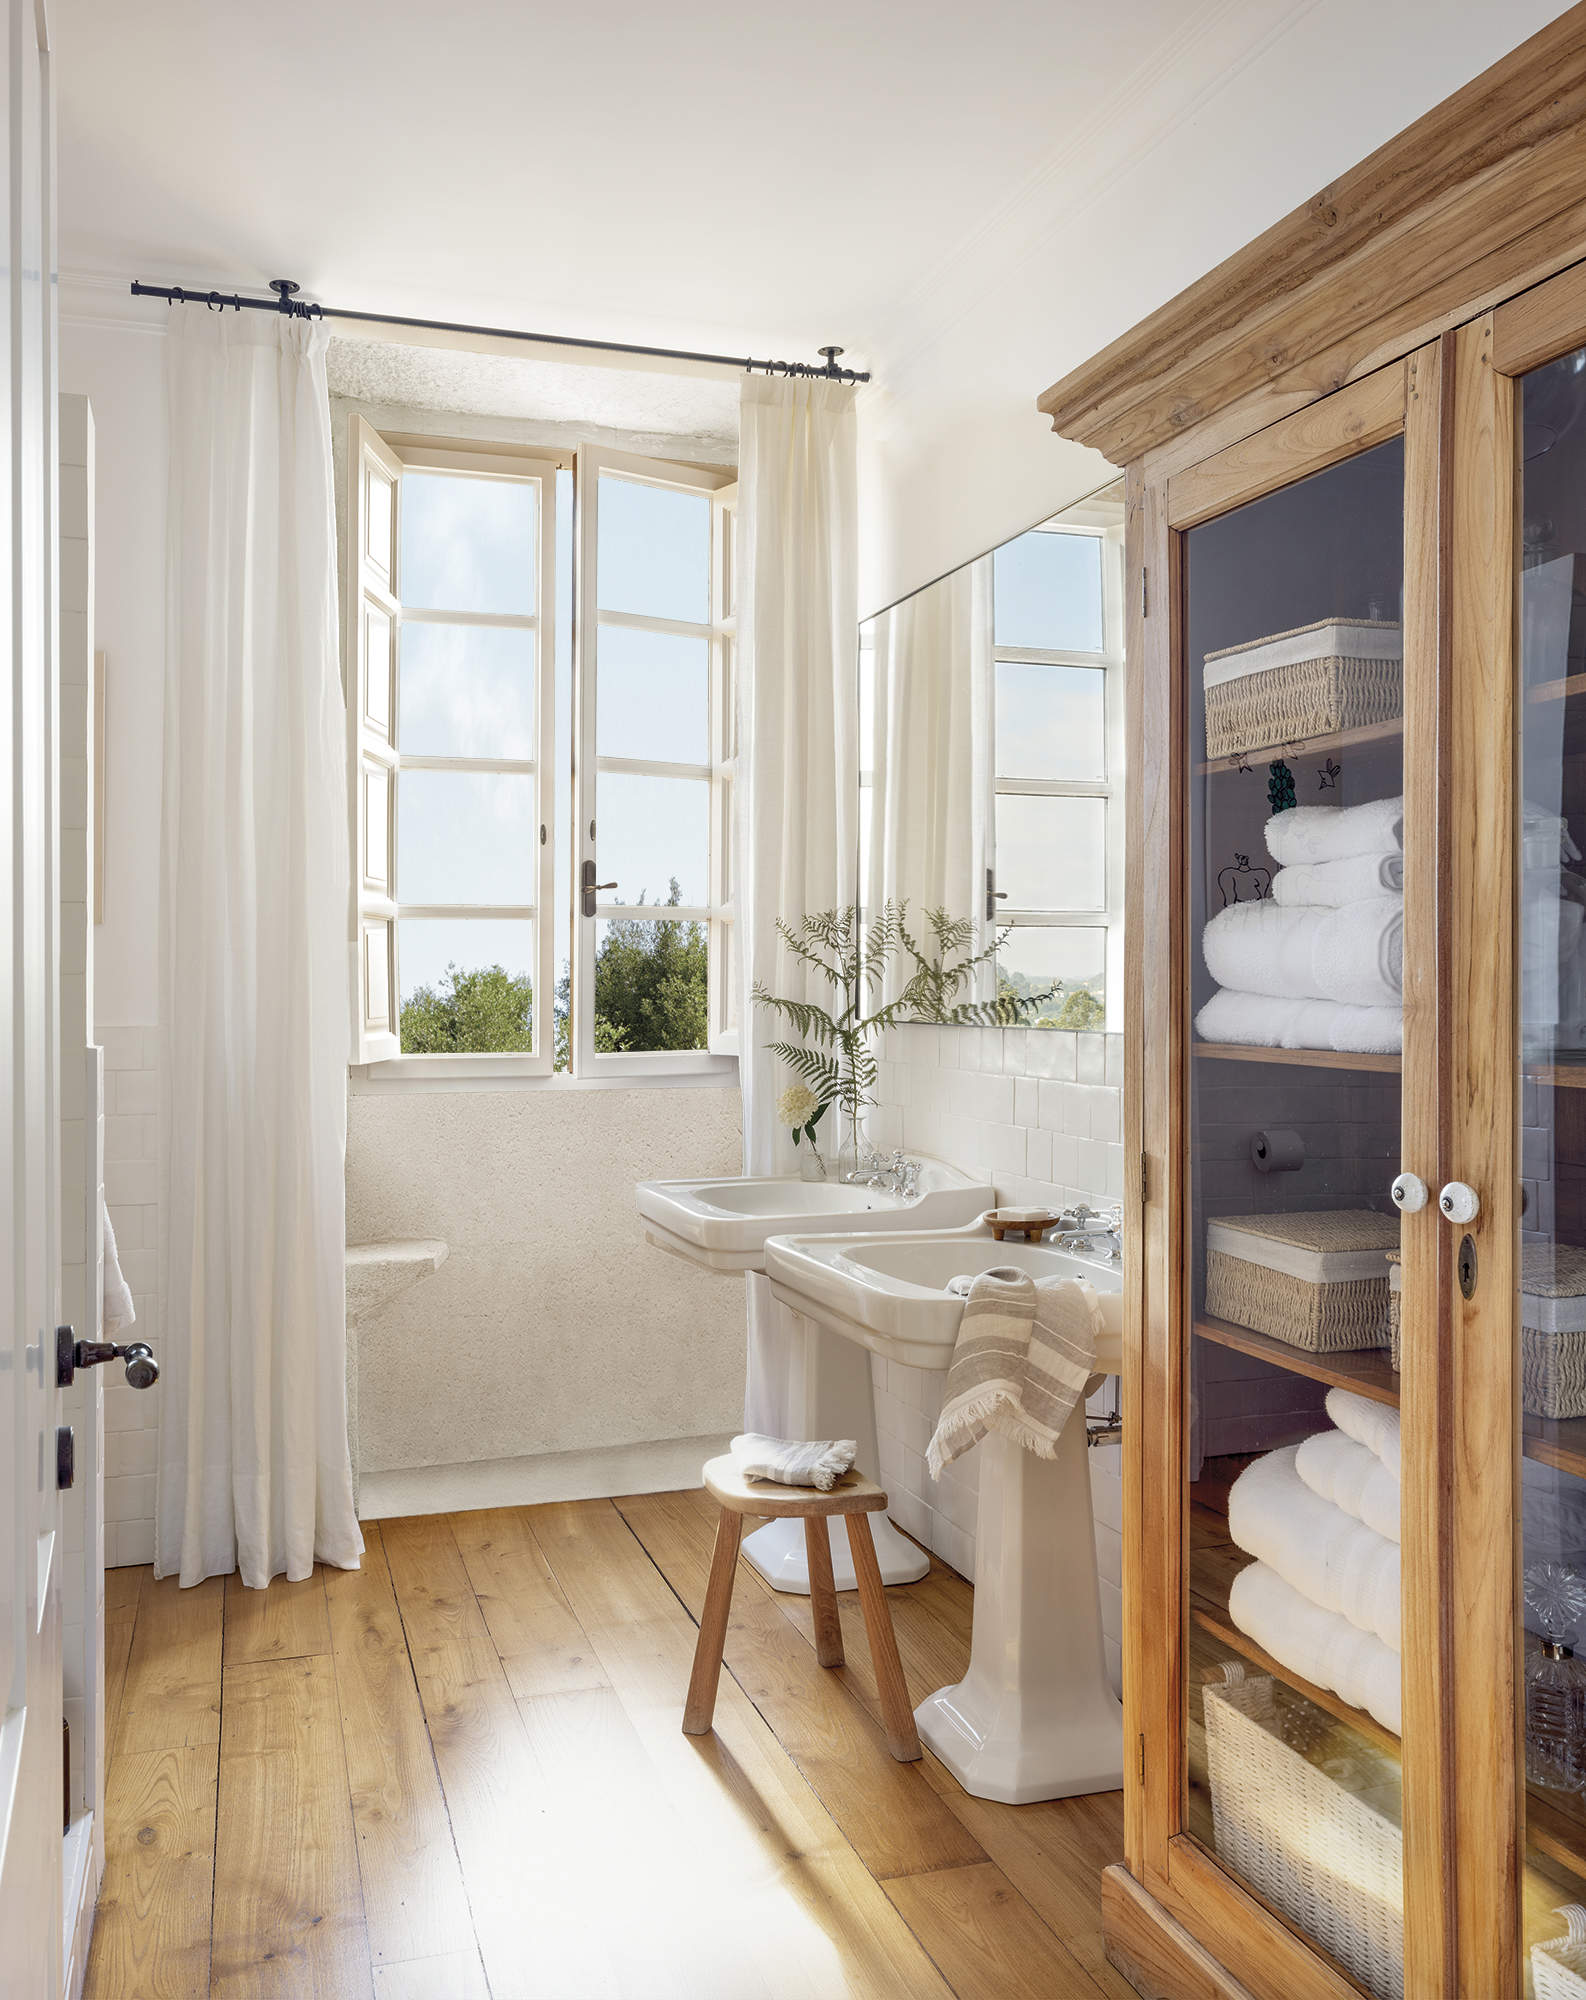 baño con suelo de madera y dos lavabos, cortinas blancas, vitrina con ropa blanca